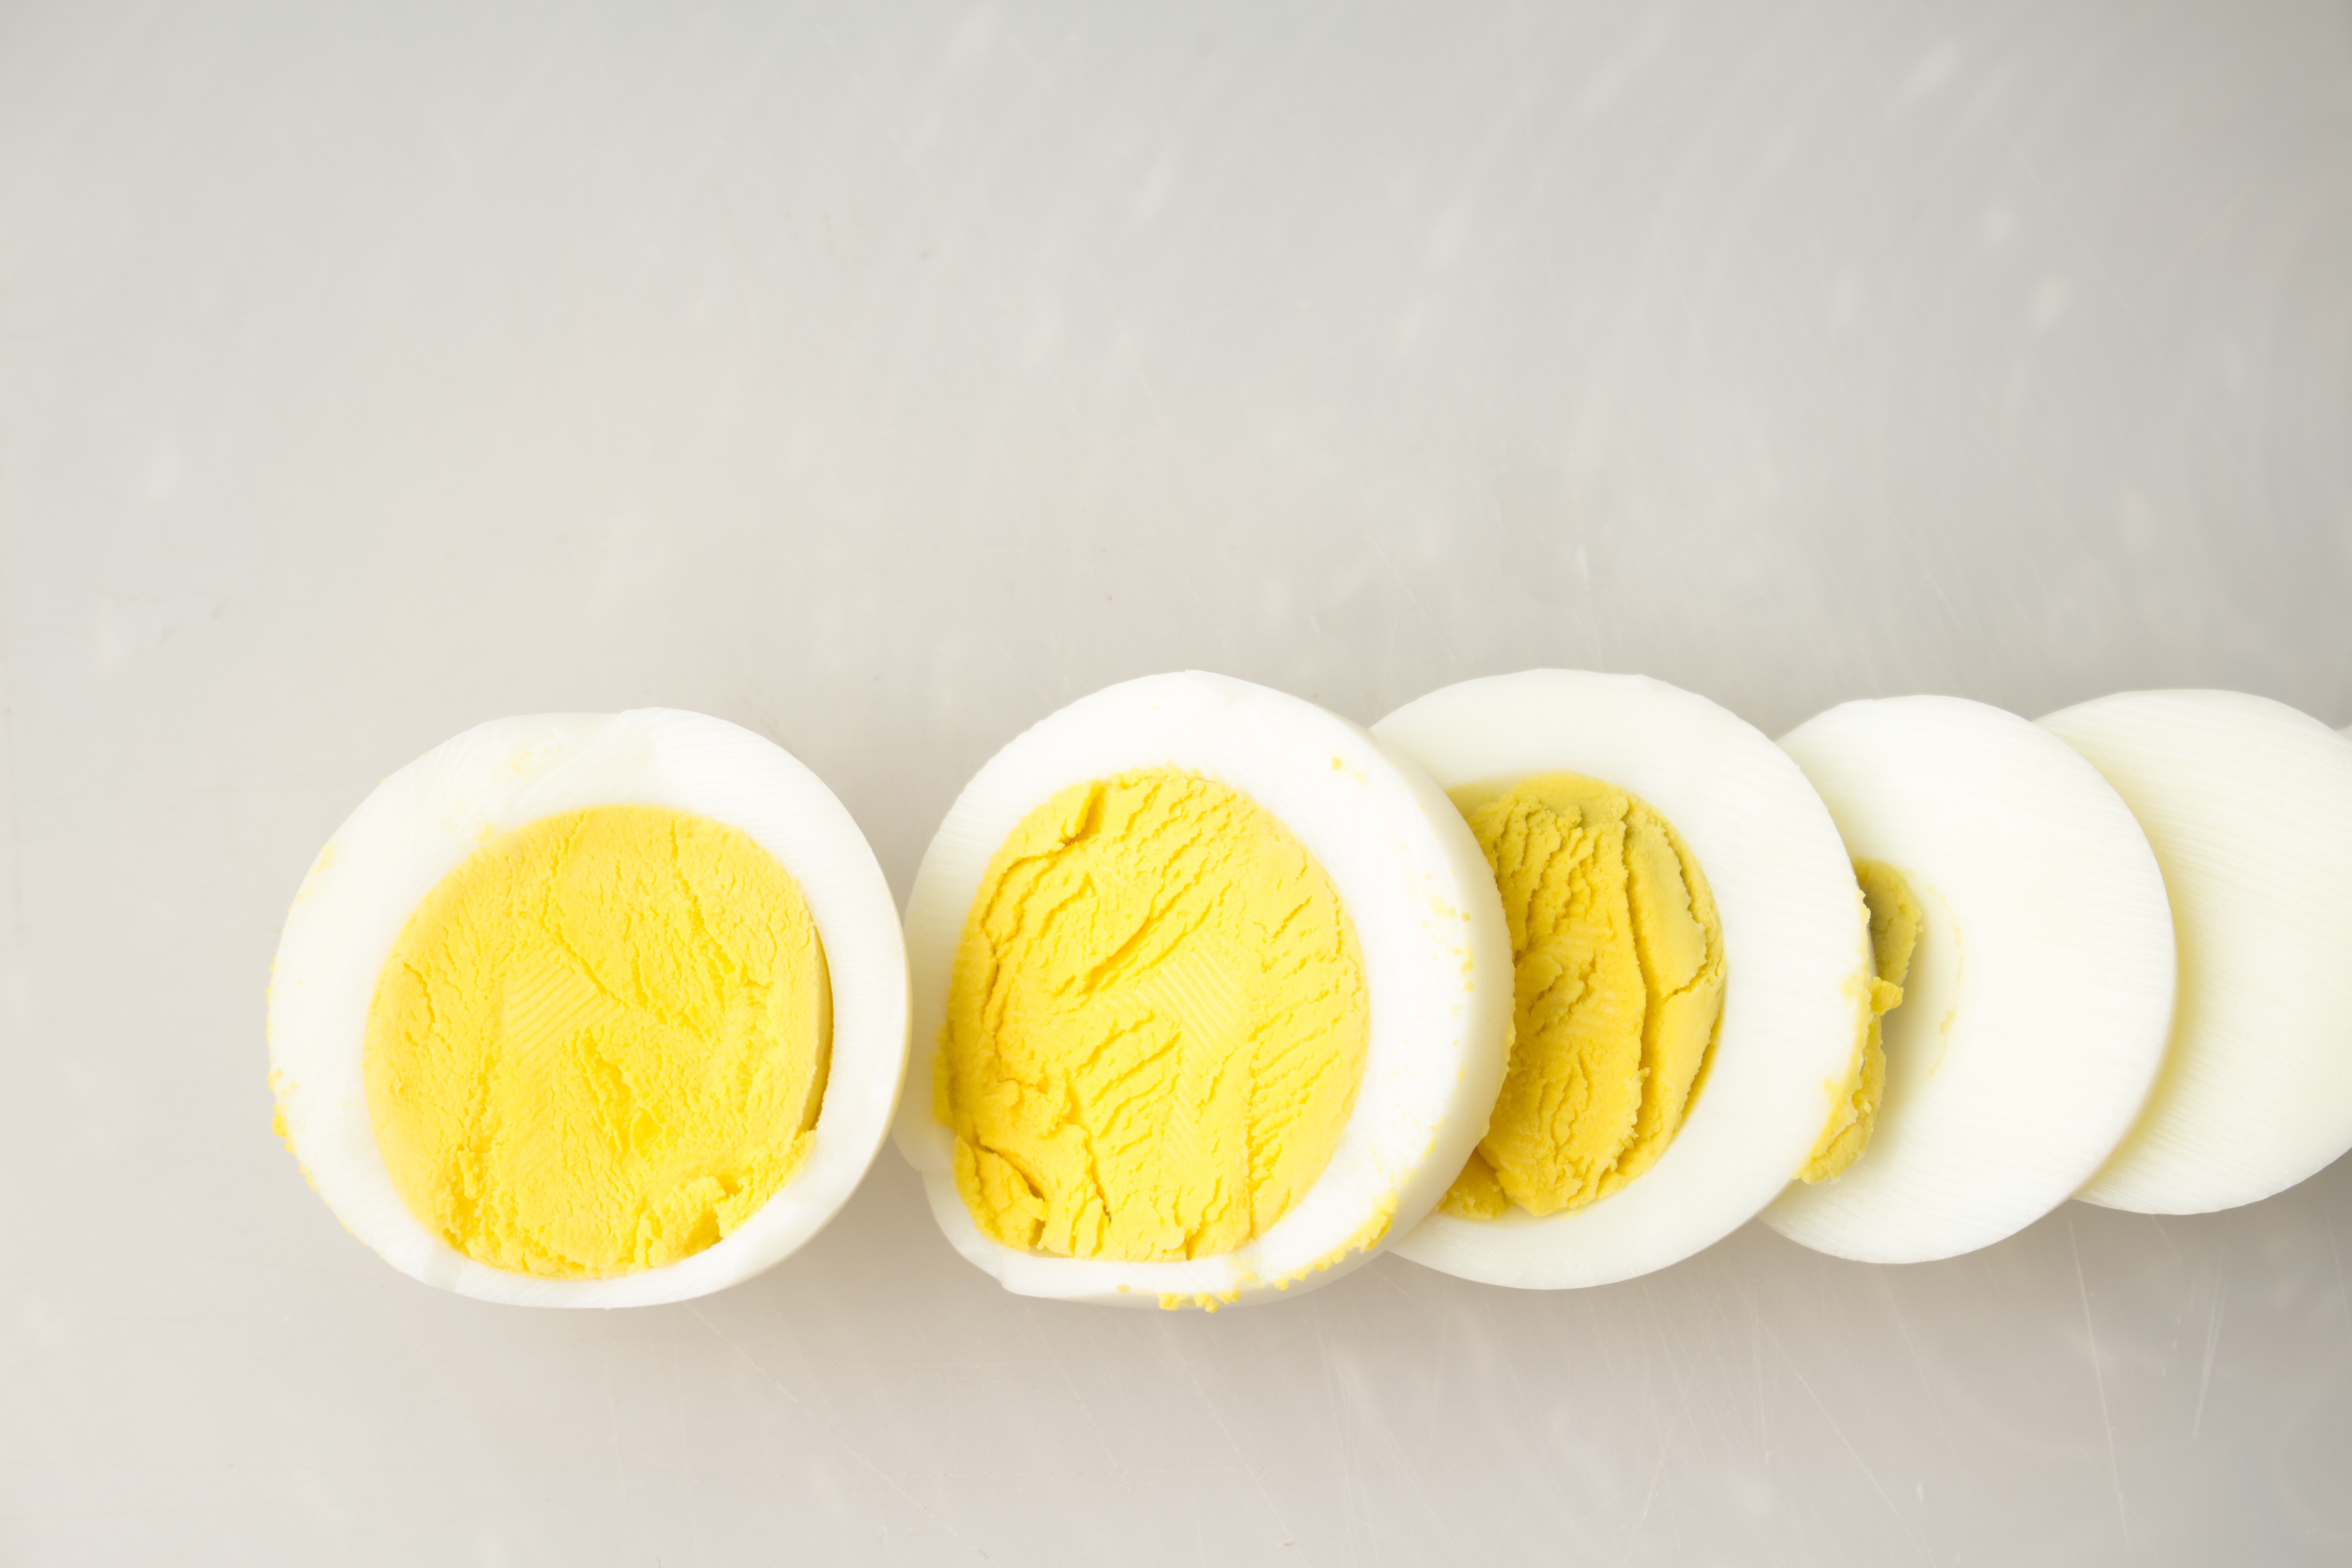 蛋要这样煮才水嫩Q弹 这妙招快学起来 | 煮蛋 | 白煮蛋 | 鸡蛋 | 大纪元